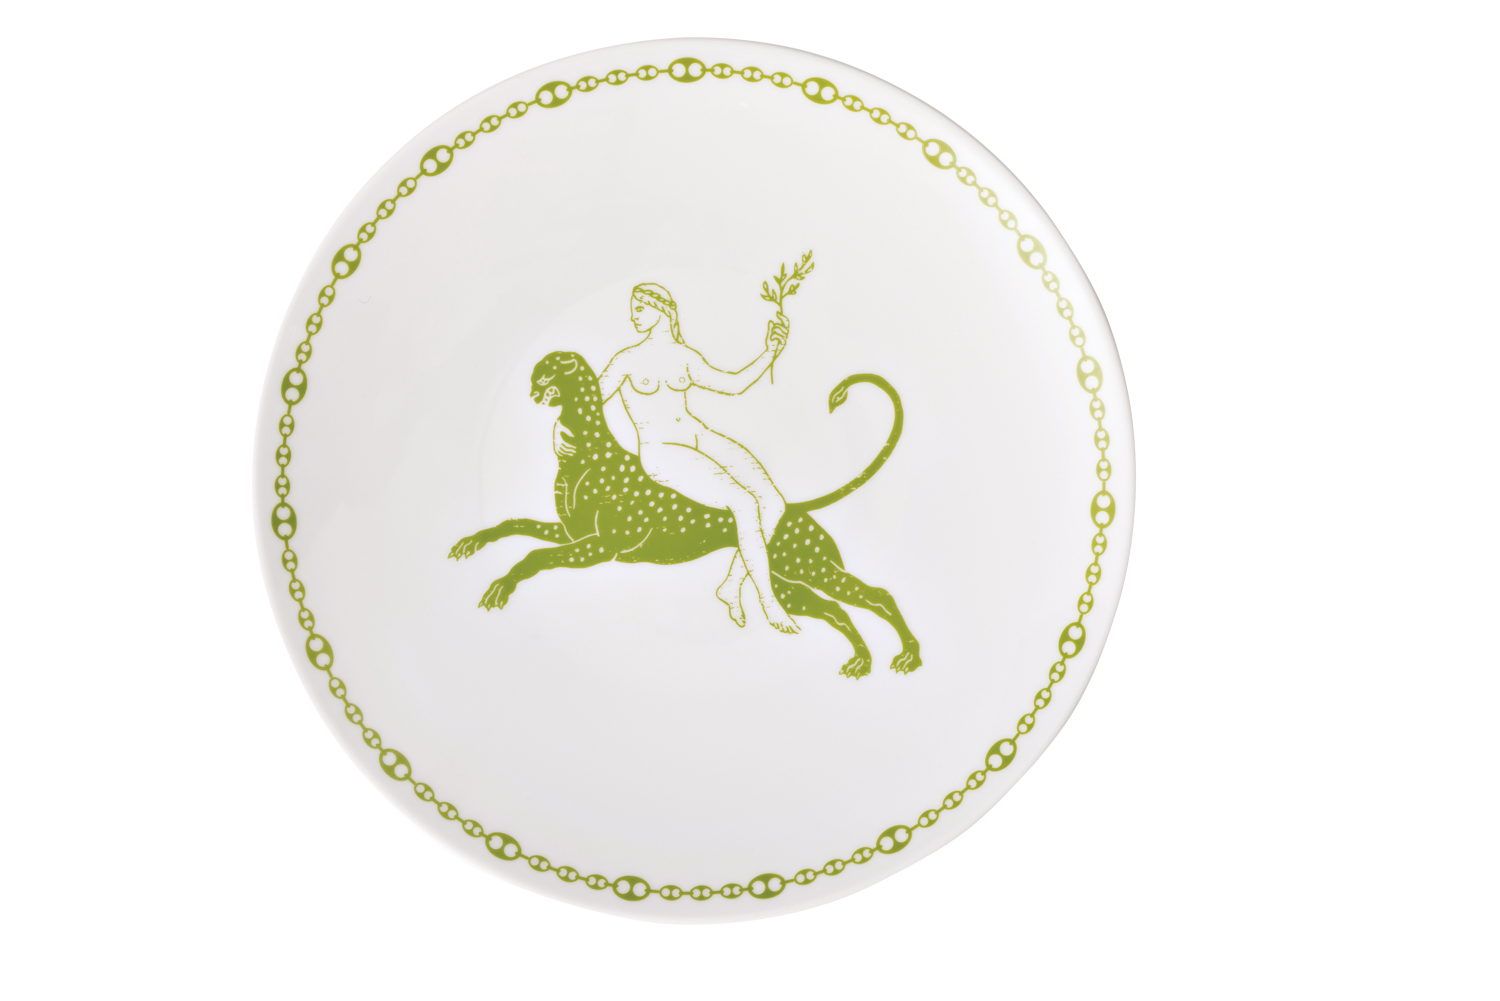 A dinner plate with a goddess motif.